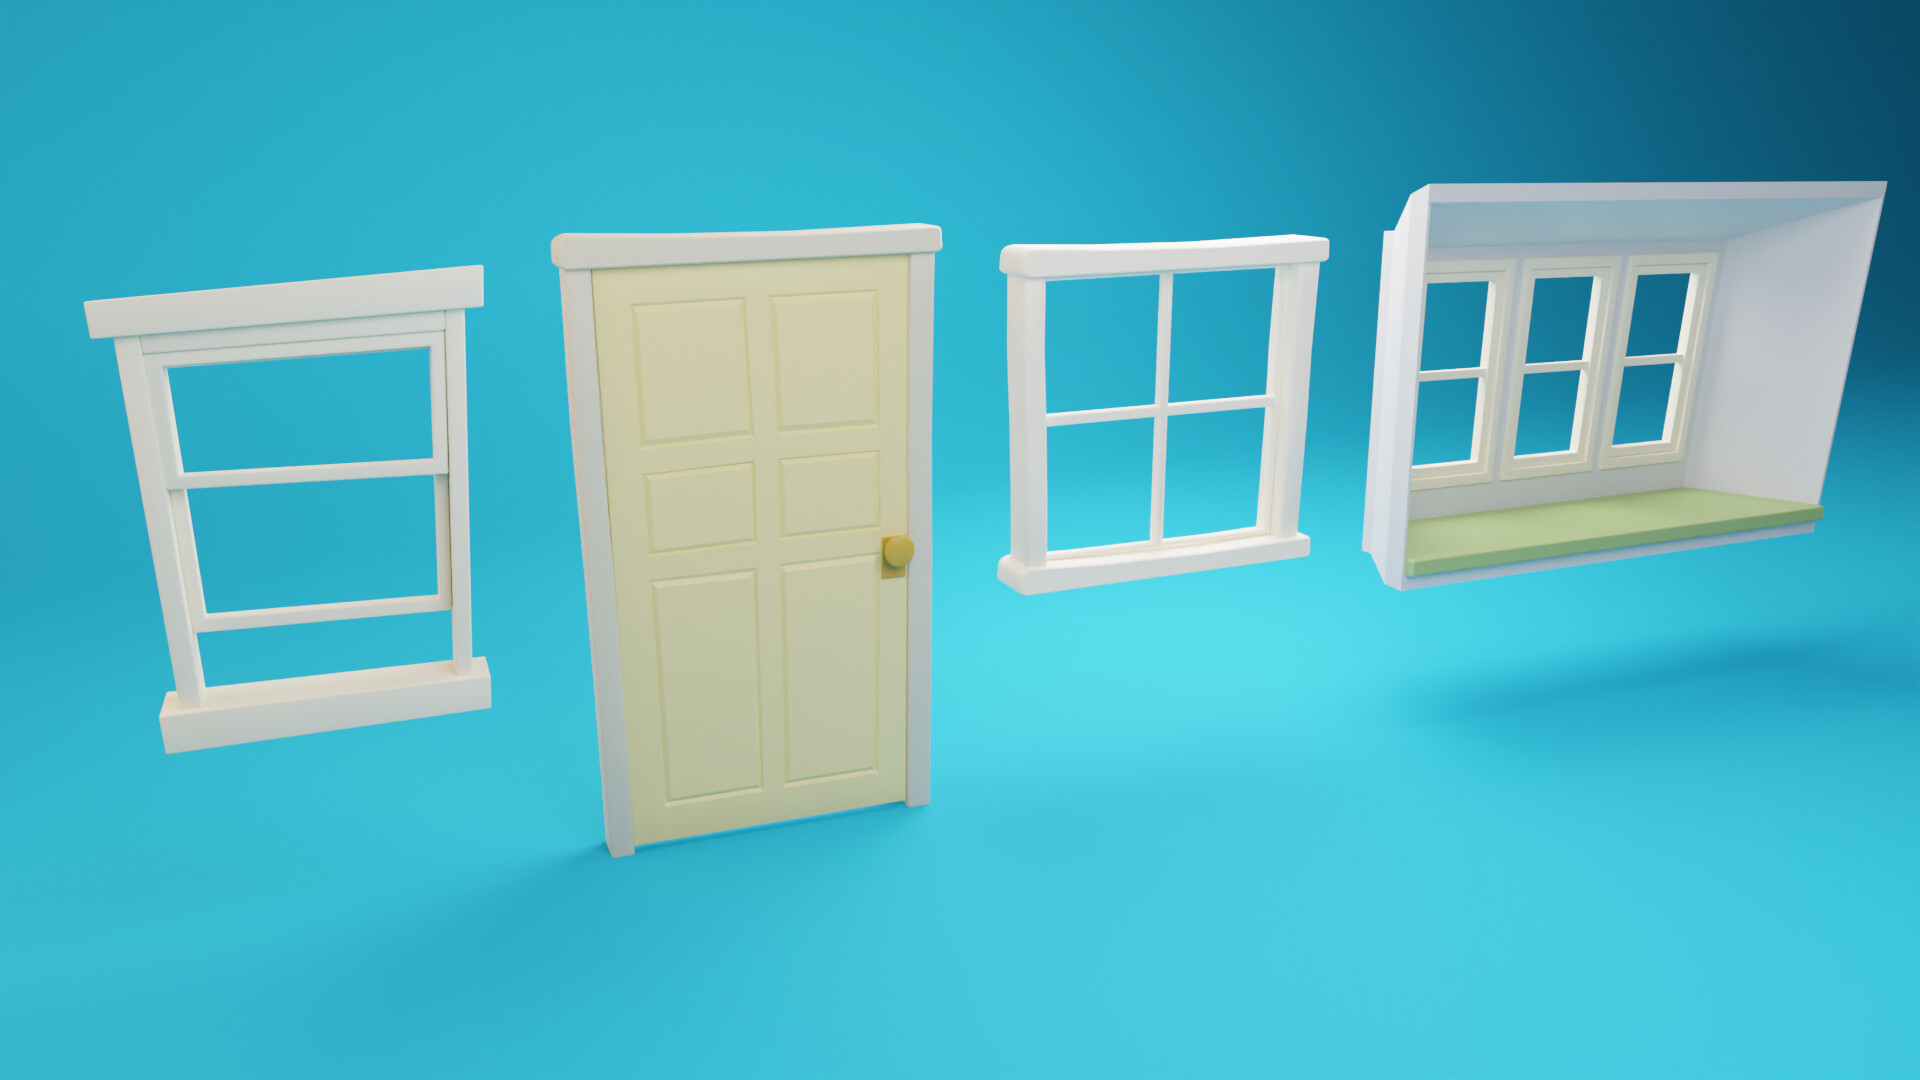 ArtStation - Cartoon Door and Windows